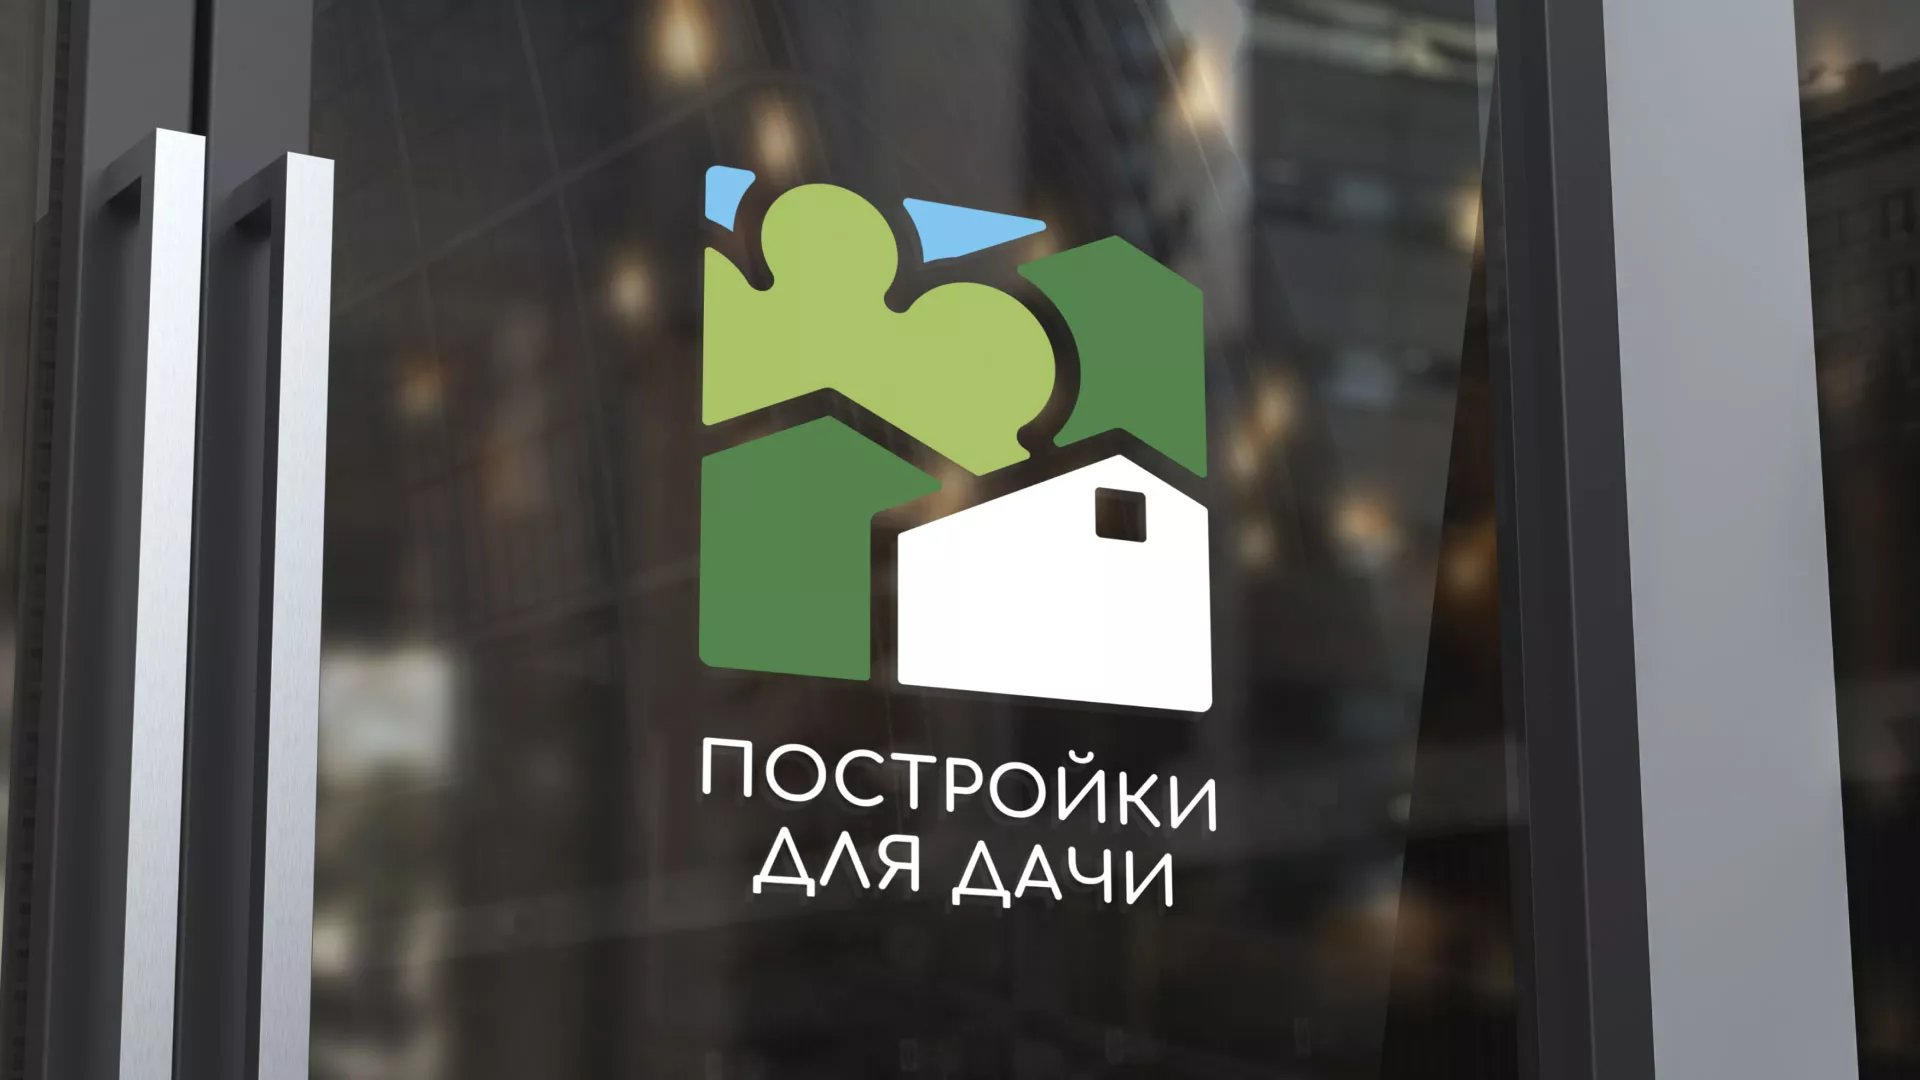 Разработка логотипа в Павлово для компании «Постройки для дачи»